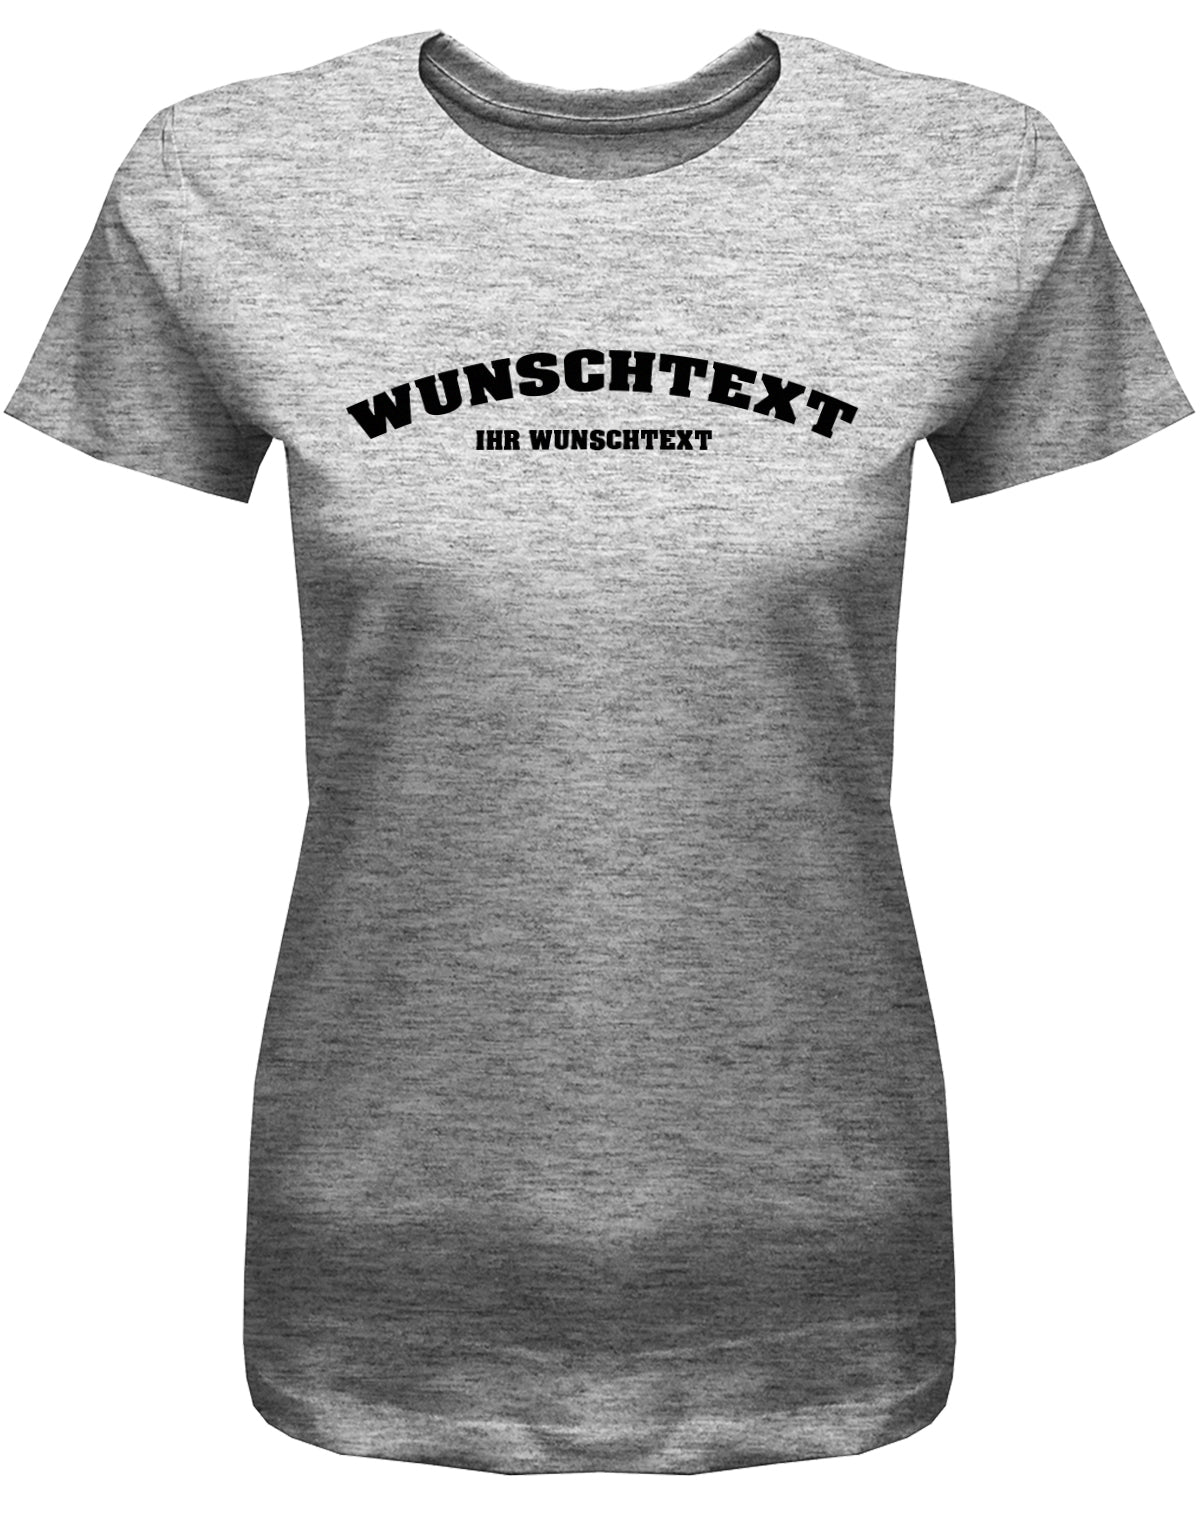 Frauen Tshirt mit Wunschtext.  Abgerundeter Text im Collage-Style. Grau